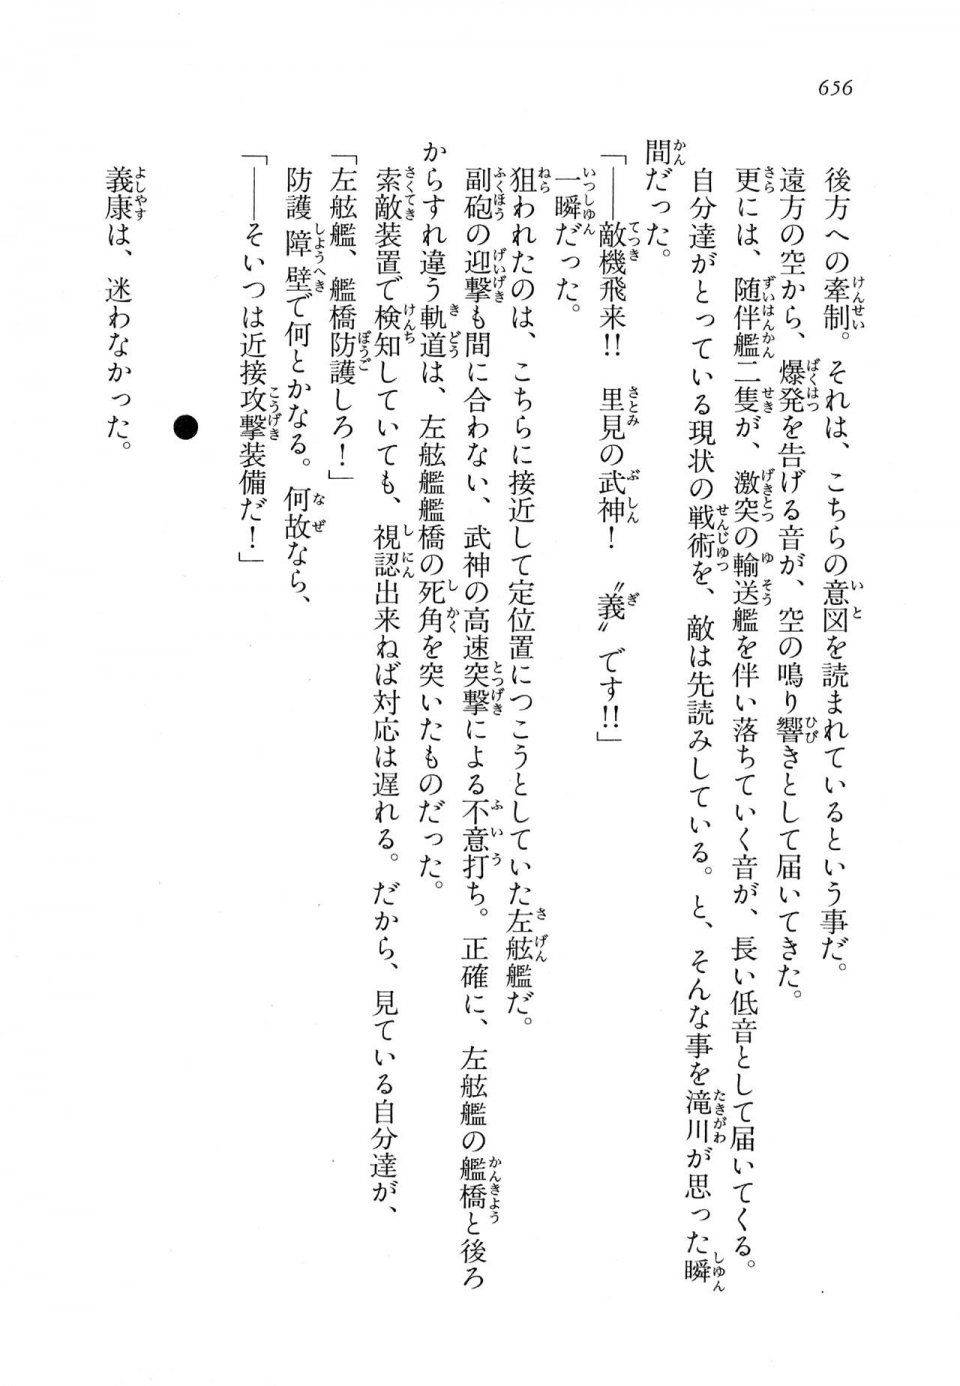 Kyoukai Senjou no Horizon LN Vol 11(5A) - Photo #656